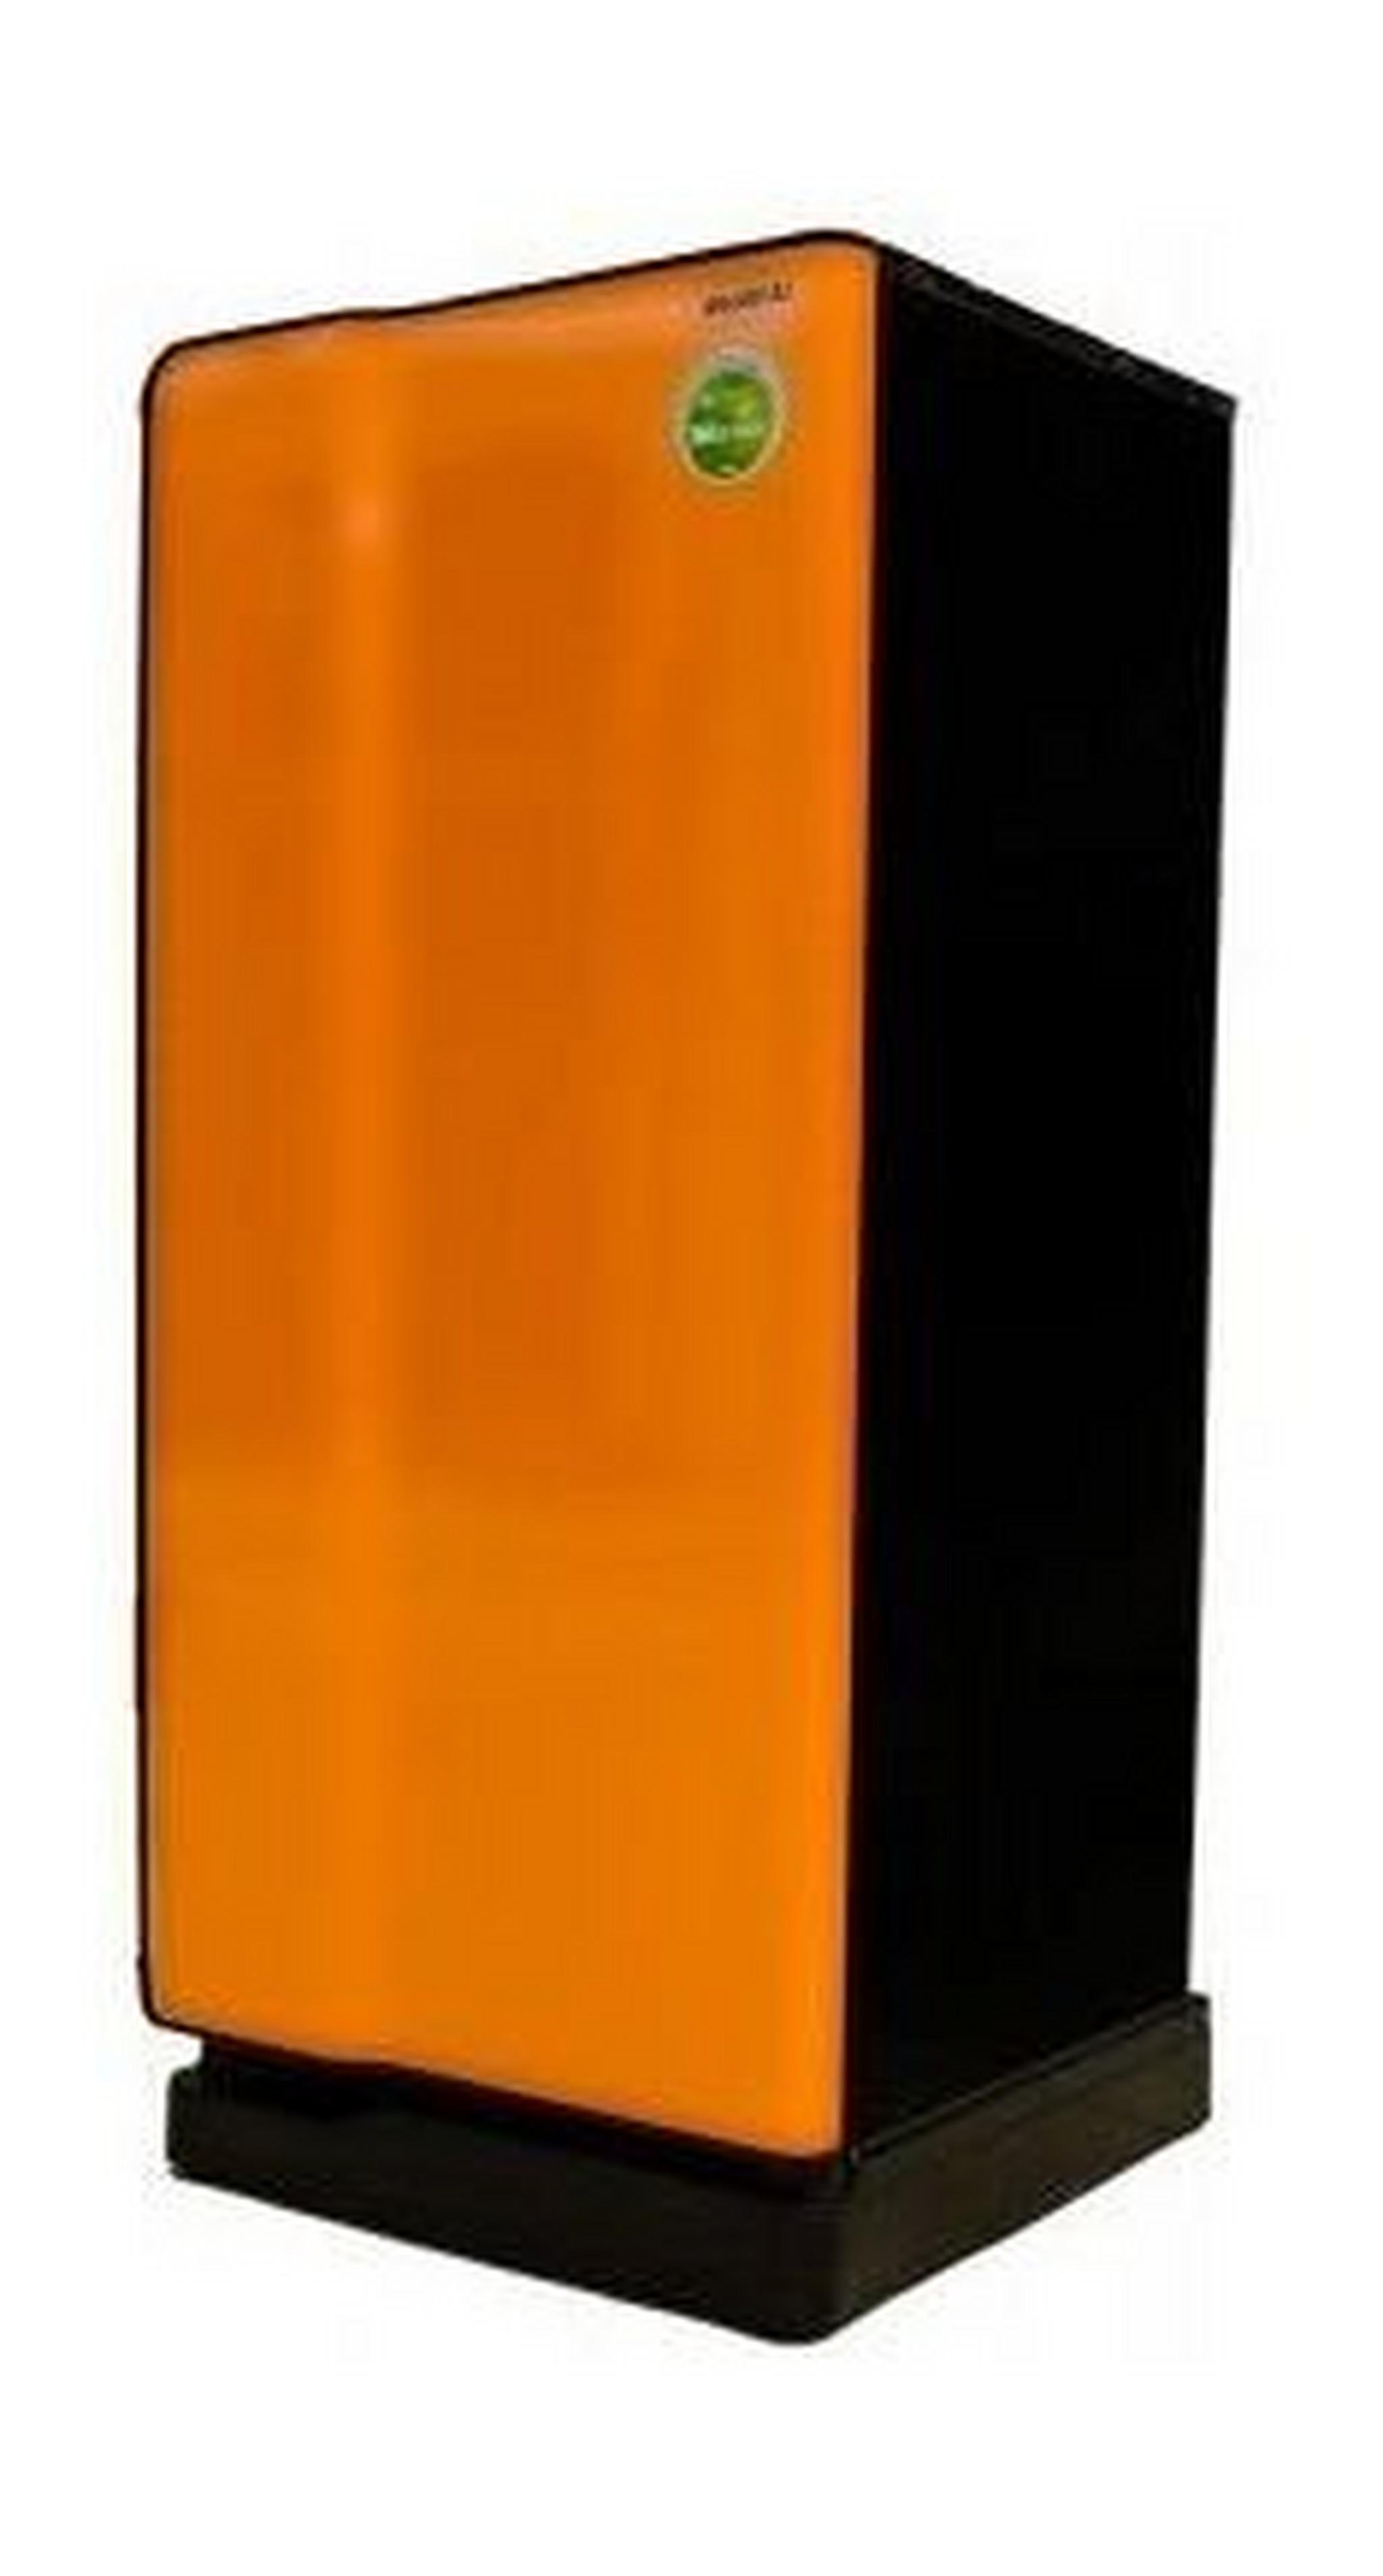 ثلاجة توشيبا باب واحد ٦,٤ قدم – برتقالي (GR-E1837)